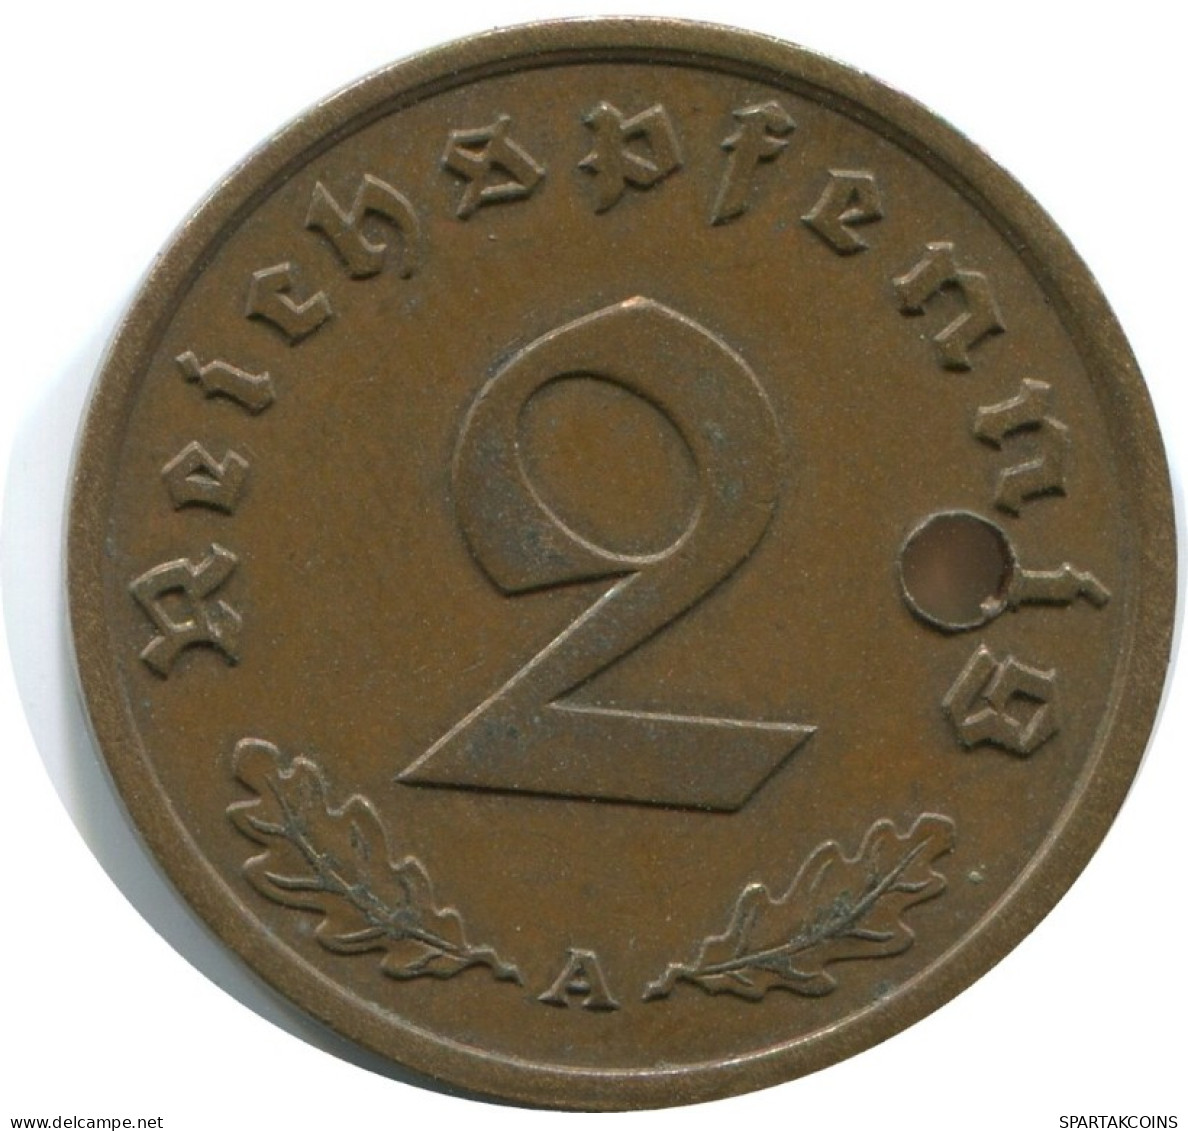 2 REICHSPFENNIG 1939 A GERMANY Coin #AD856.9.U.A - 2 Rentenpfennig & 2 Reichspfennig